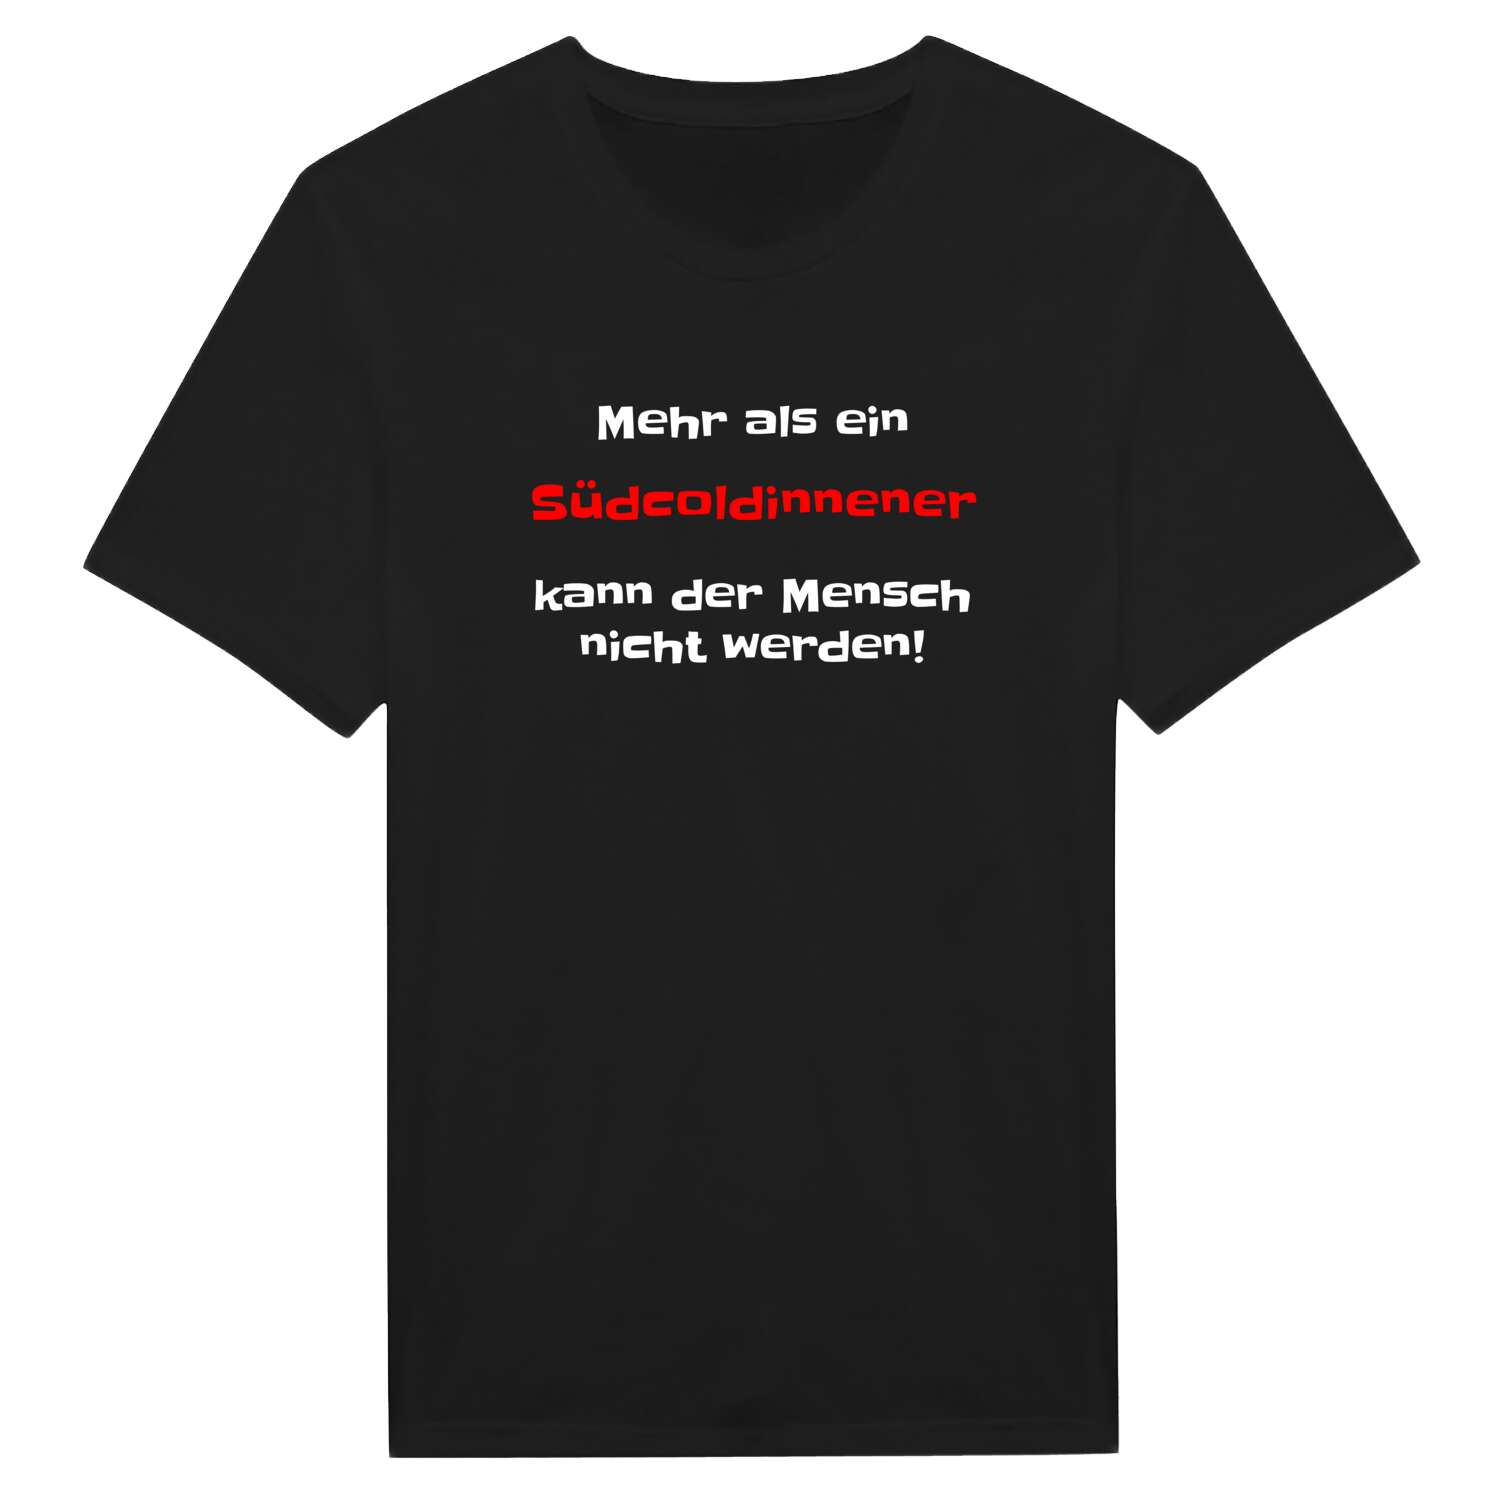 Südcoldinne T-Shirt »Mehr als ein«